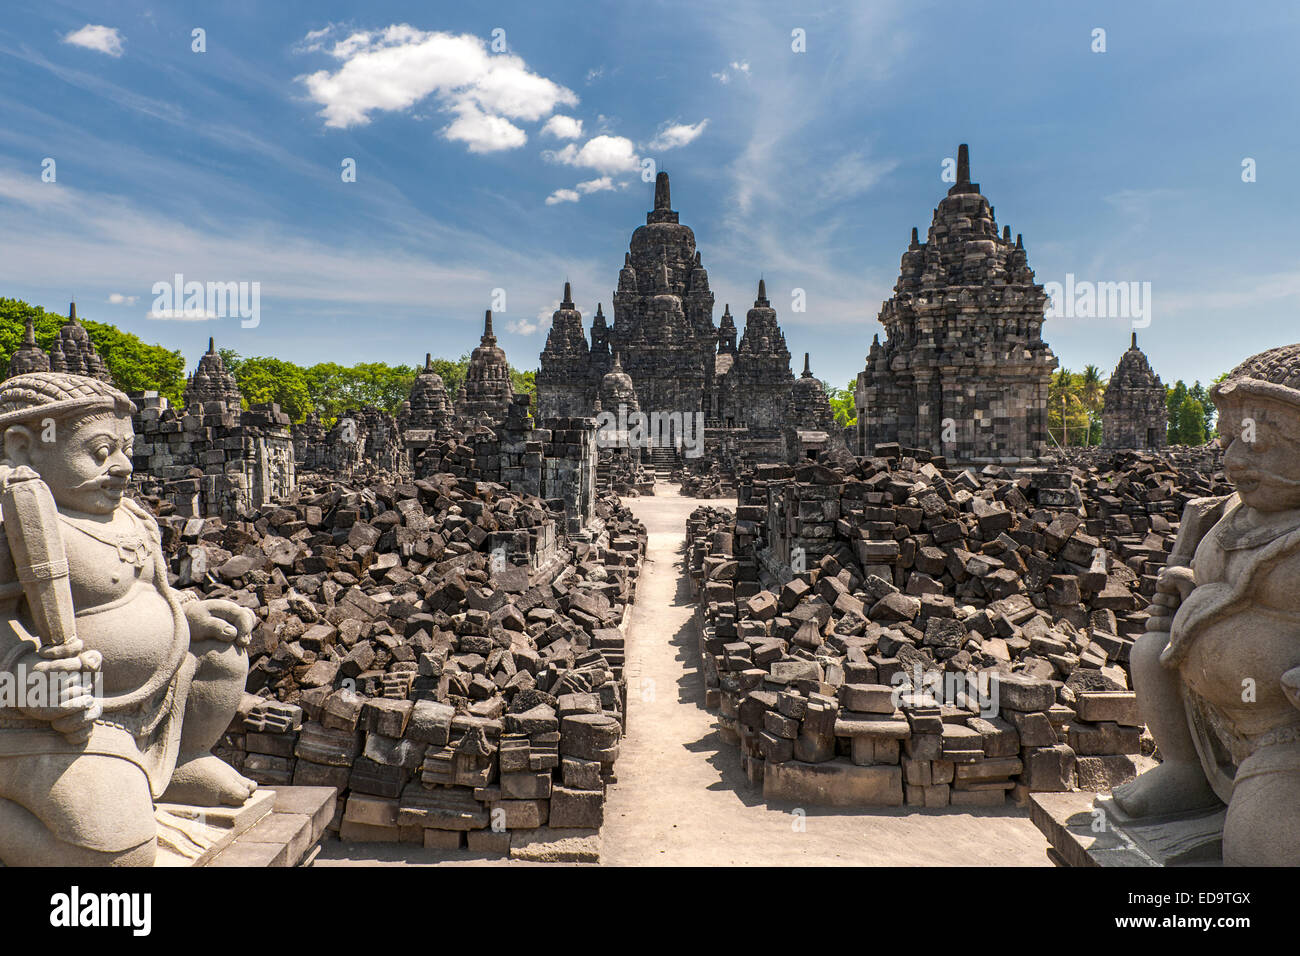 Candi Sewu, Teil des Prambanan, ein 9. Jahrhundert Hindu-Tempel in der Nähe von Yogyakarta in Zentraljava, Indonesien. Stockfoto